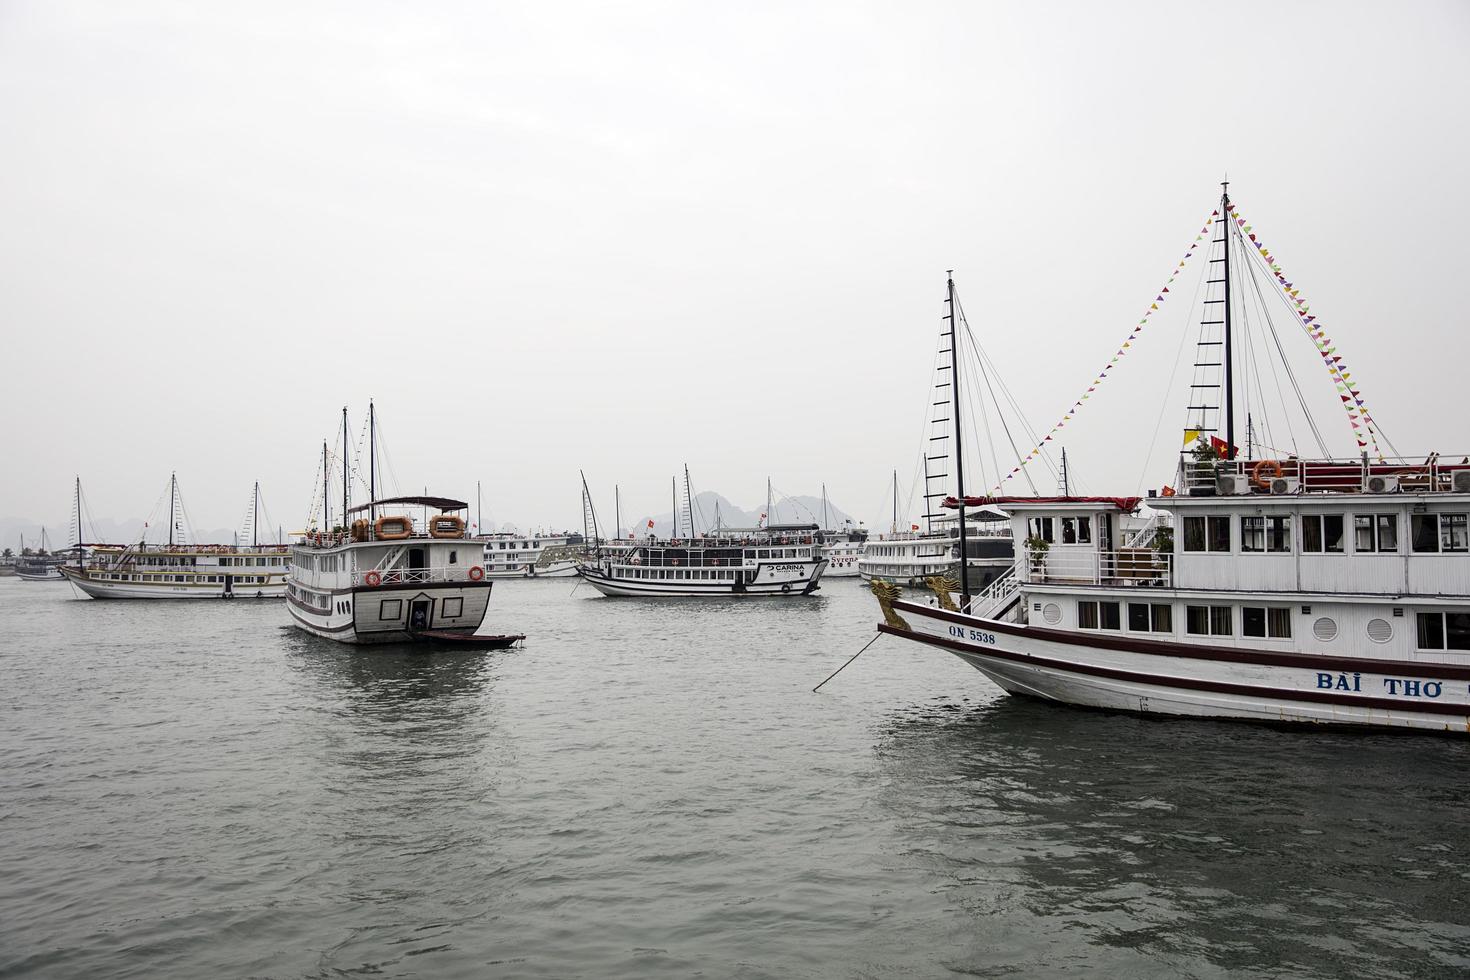 halong, vietnam, 28 februari 2017 - turistkryssningsfartyg i halong hamn. huvudnäringarna vid halong är turism, tjänster, handel, jordbruk, skogsbruk och fiske foto